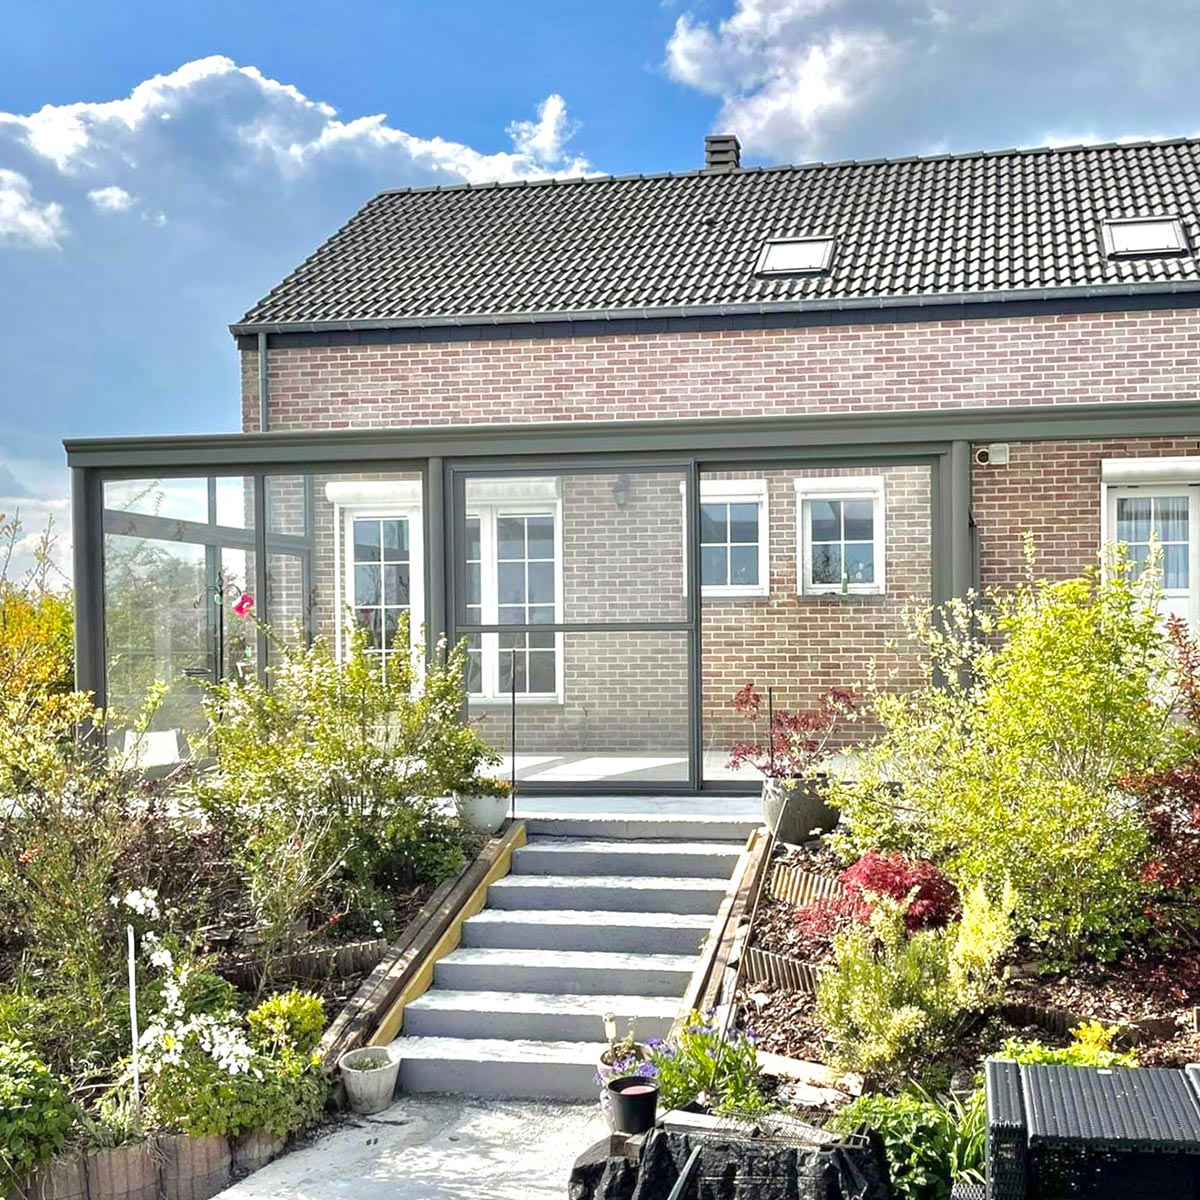 Pergola vitrée accolée à une maison à briques beiges et rouges et sur une terrasse qui donne accès au jardin avec un petit escalier